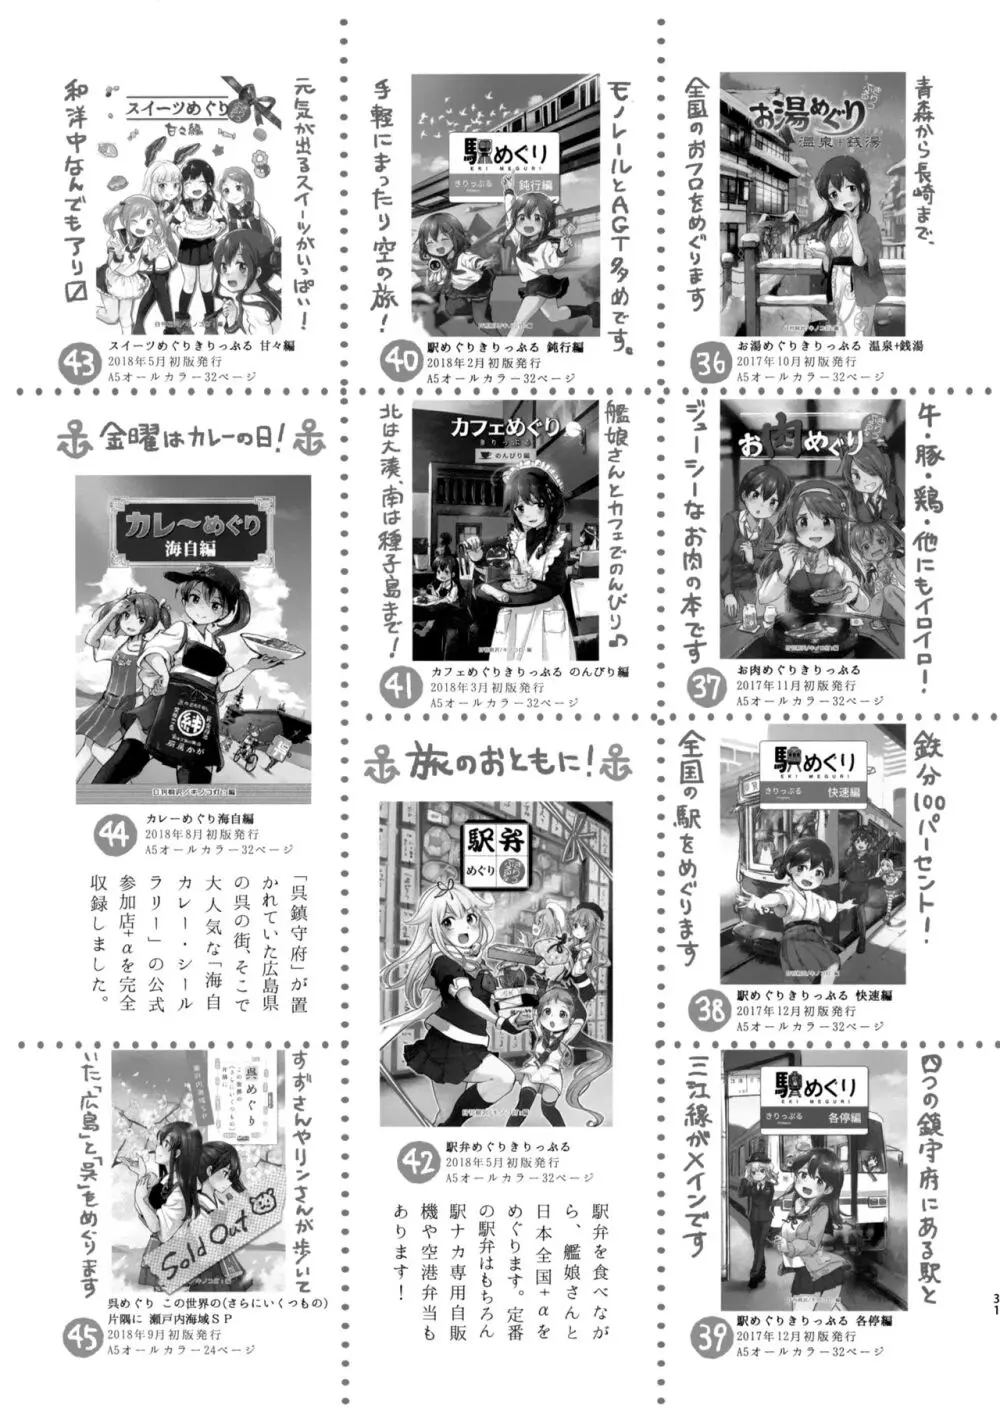 迅鯨ちゃんと 蜜月温泉 旅の宿 - page30